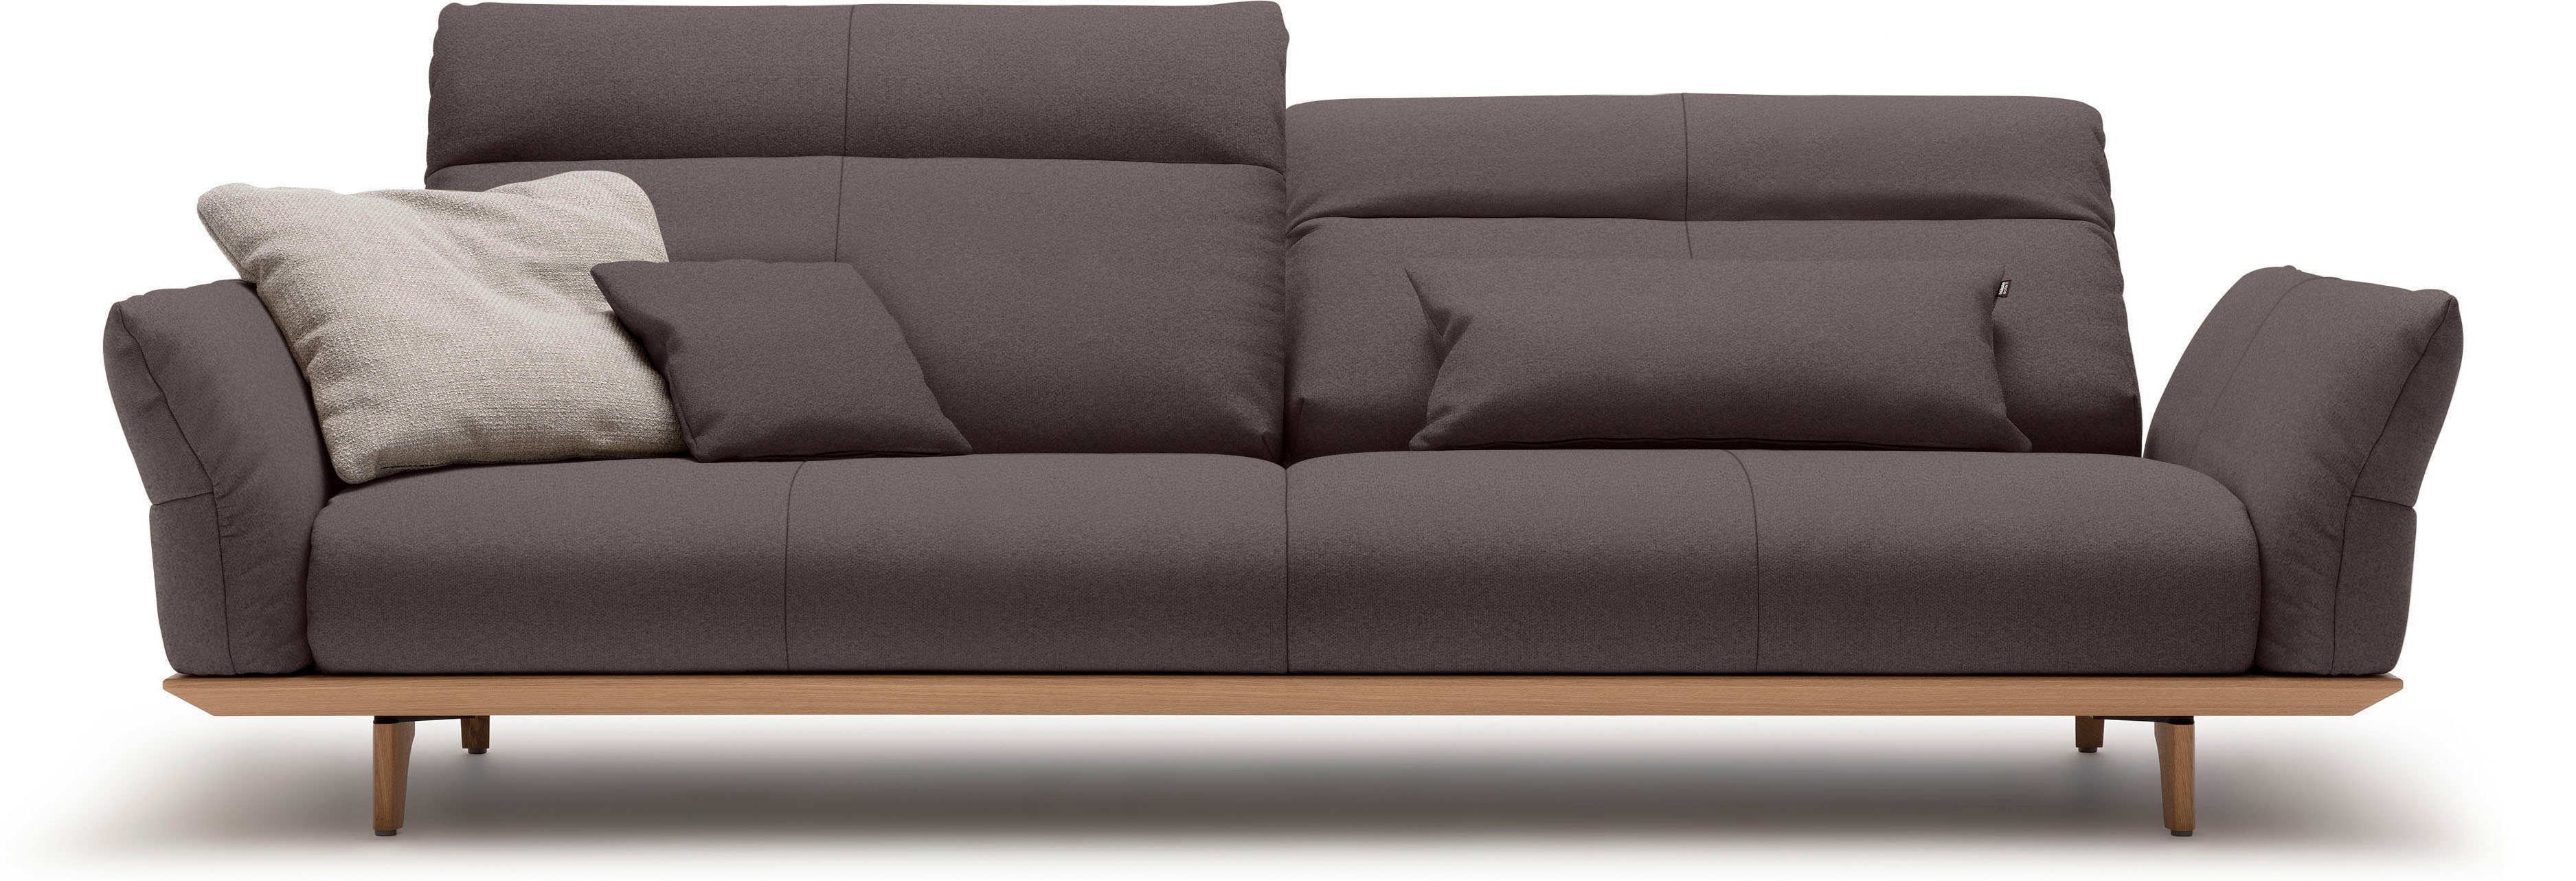 natur, cm 4-Sitzer Füße hülsta Sockel sofa 248 in Eiche, Eiche hs.460, Breite